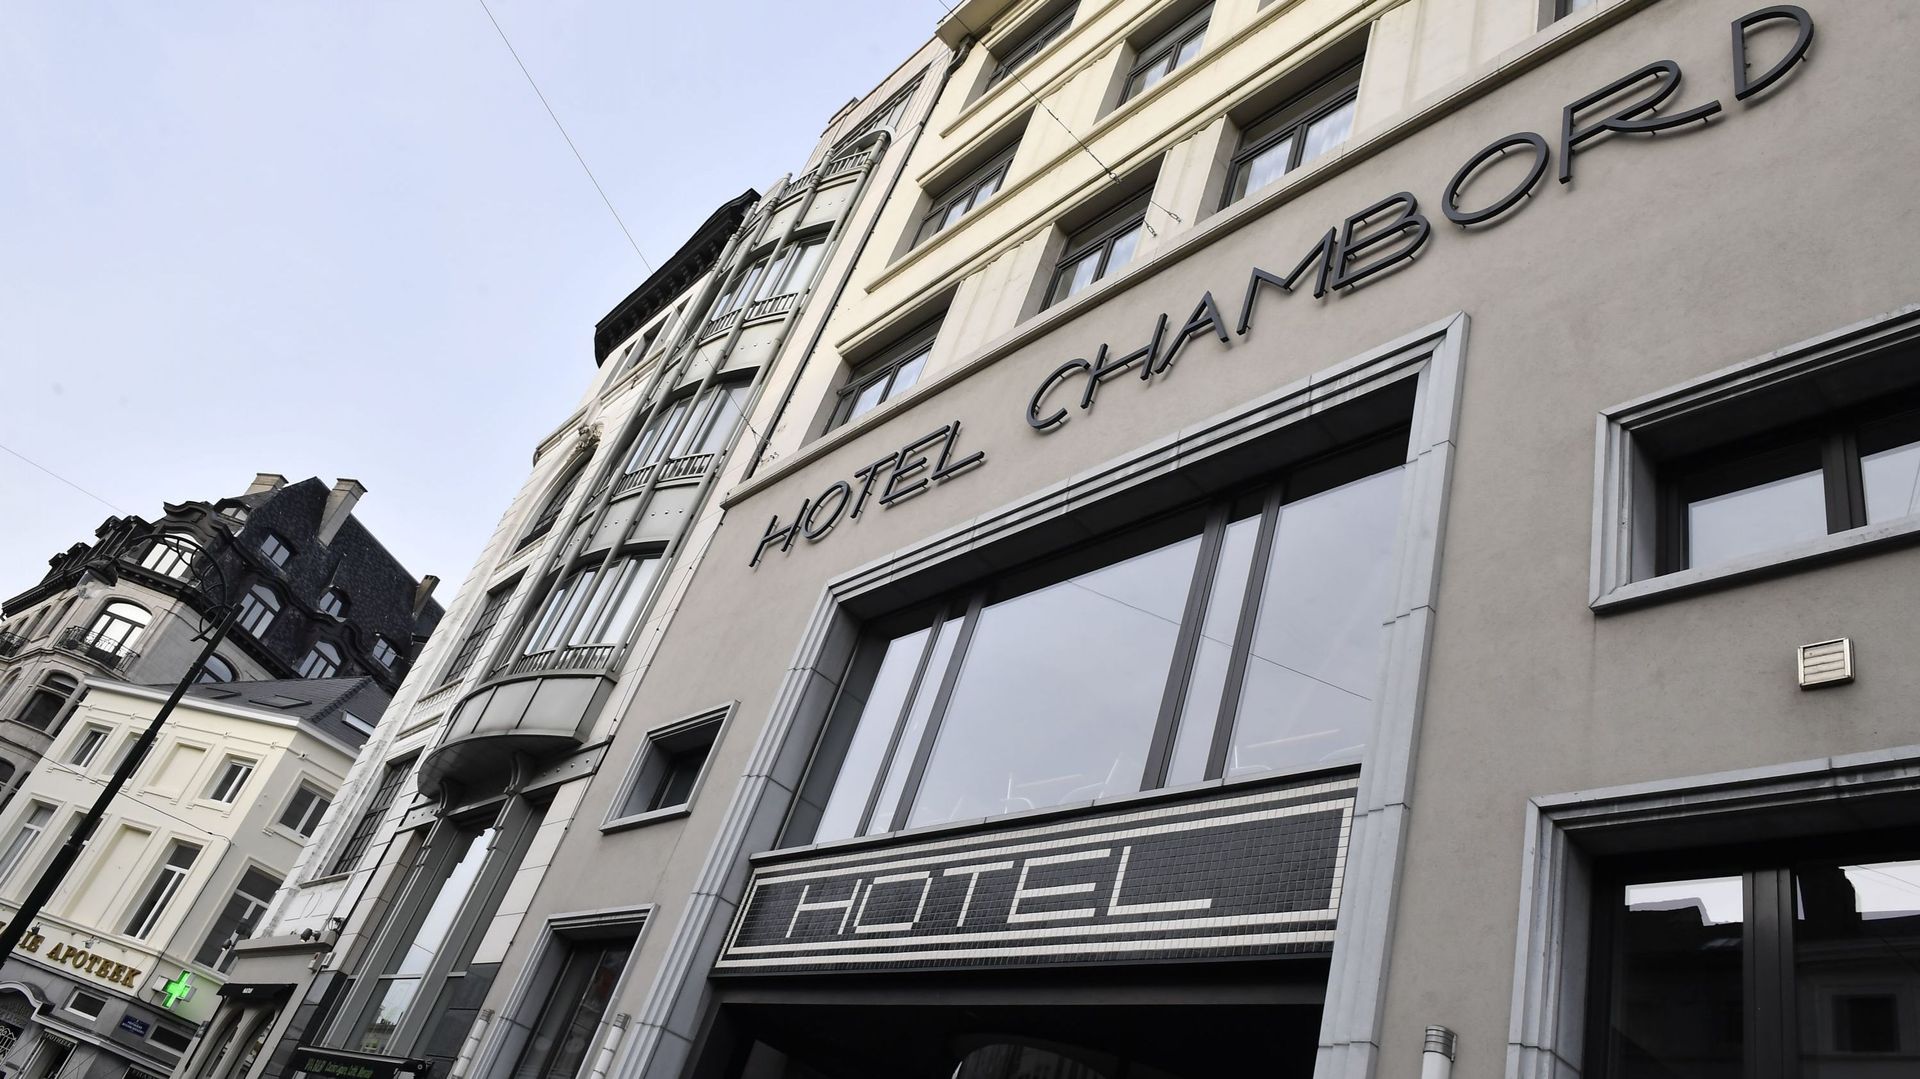 Neuf chambres d'hôtel sur dix sont vides en Région bruxelloise